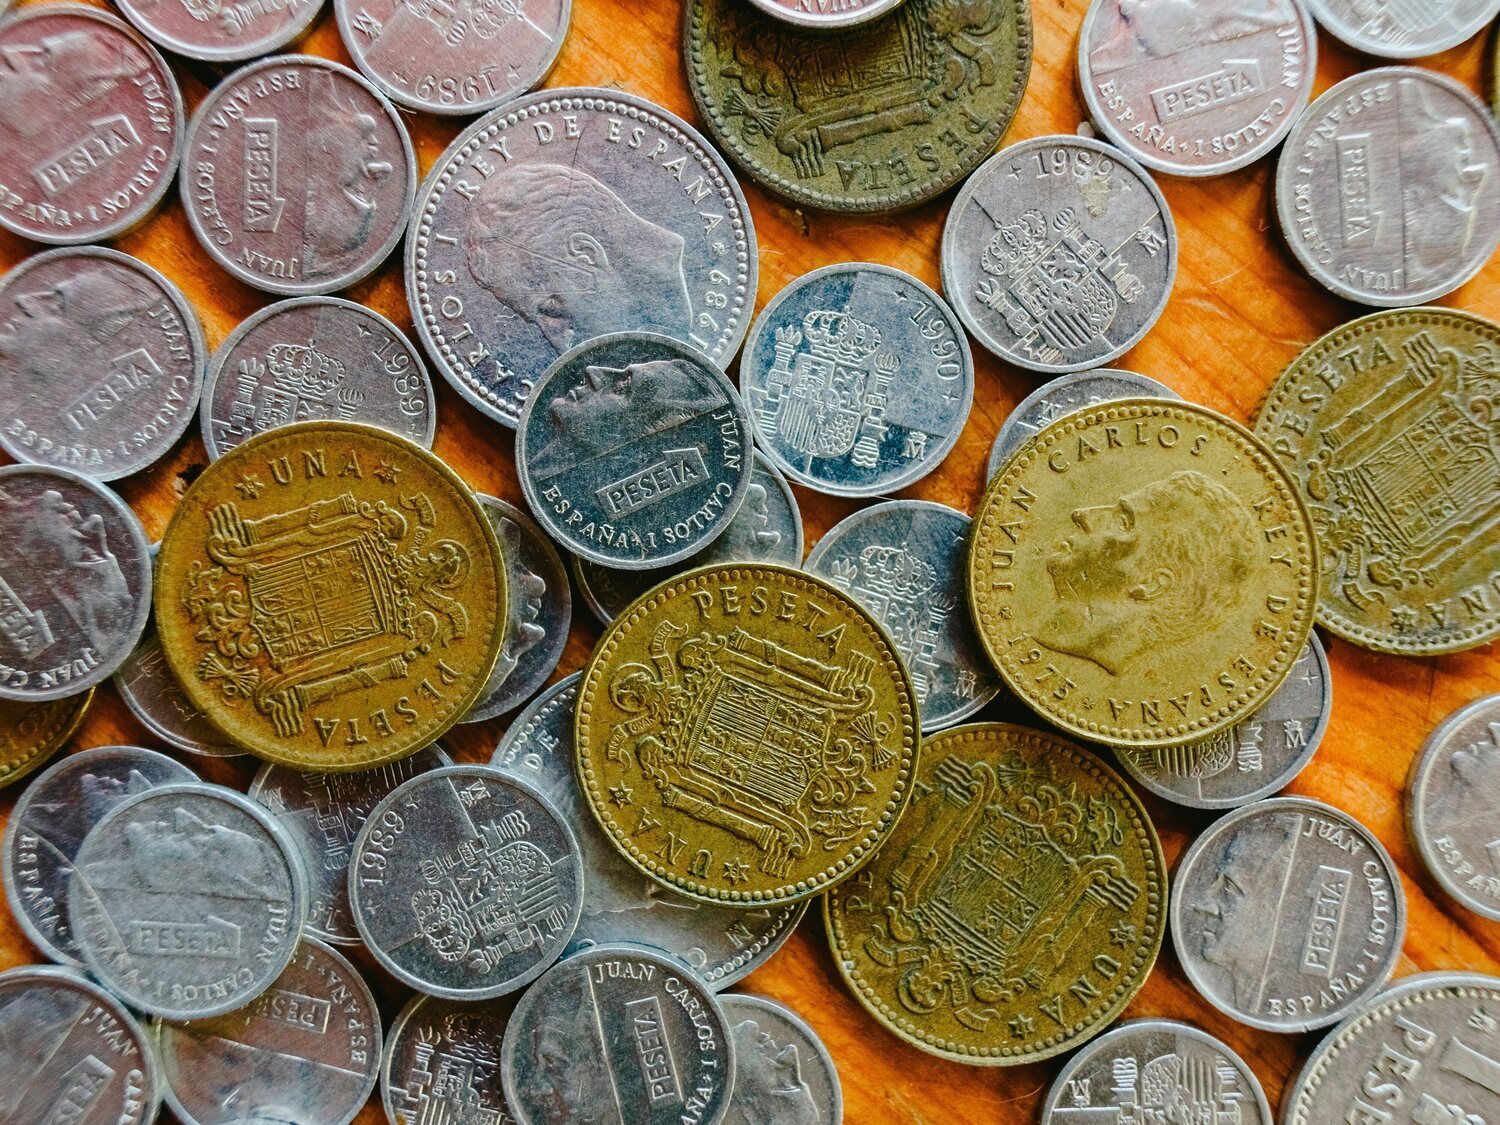 La moneda de 5 pesetas del Mundial de 1982 que alcanza un valor de 600 euros